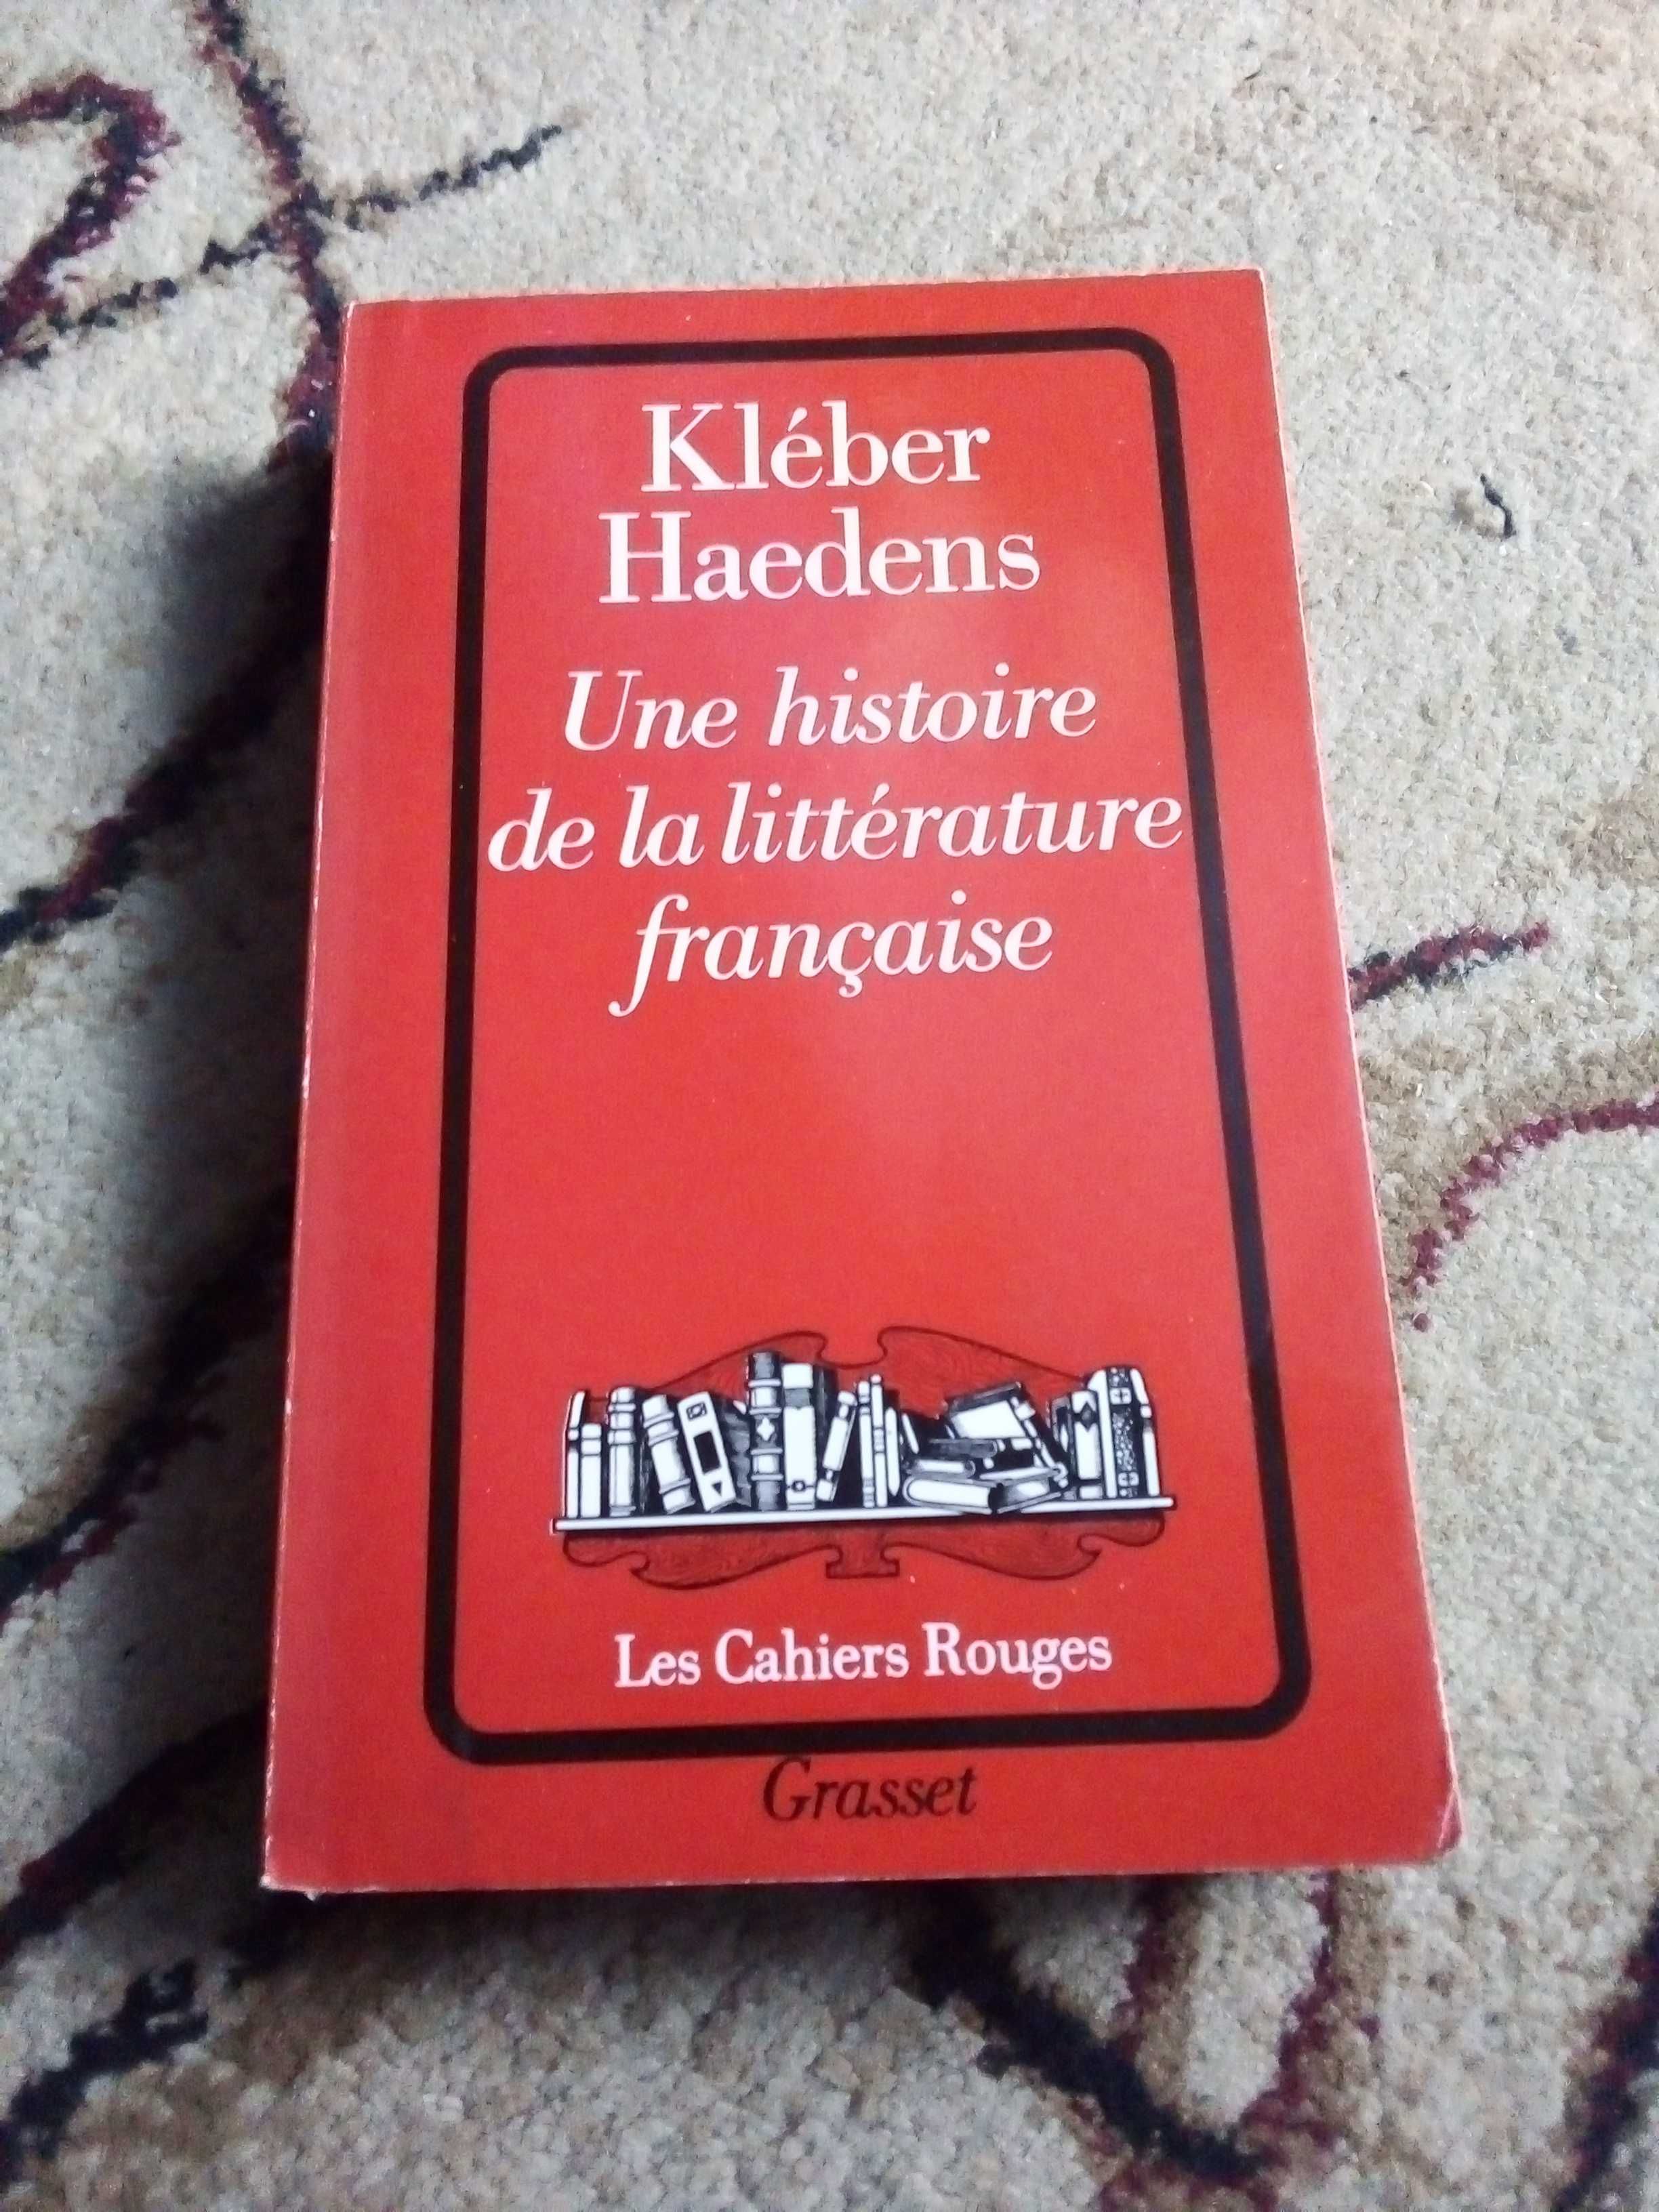 Cartea "une histoire de la littérature française"